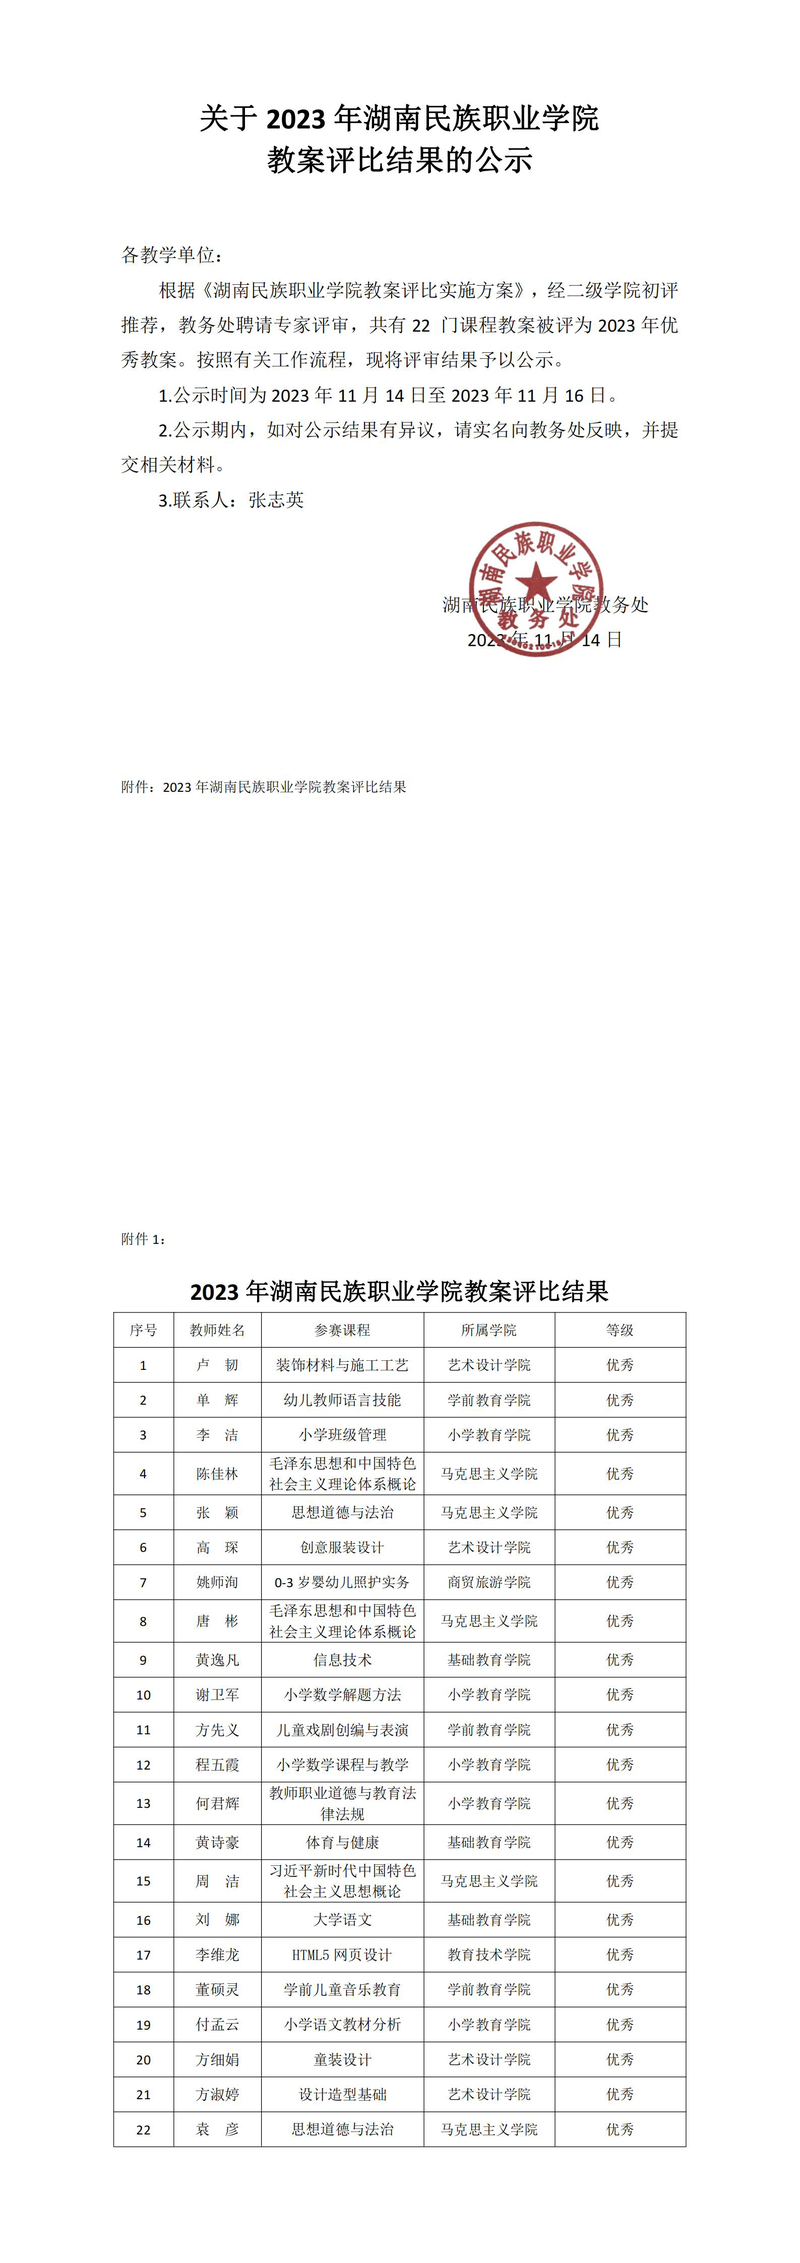 关于2023年湖南民族职业学院教案评比结果的公示_00.jpg